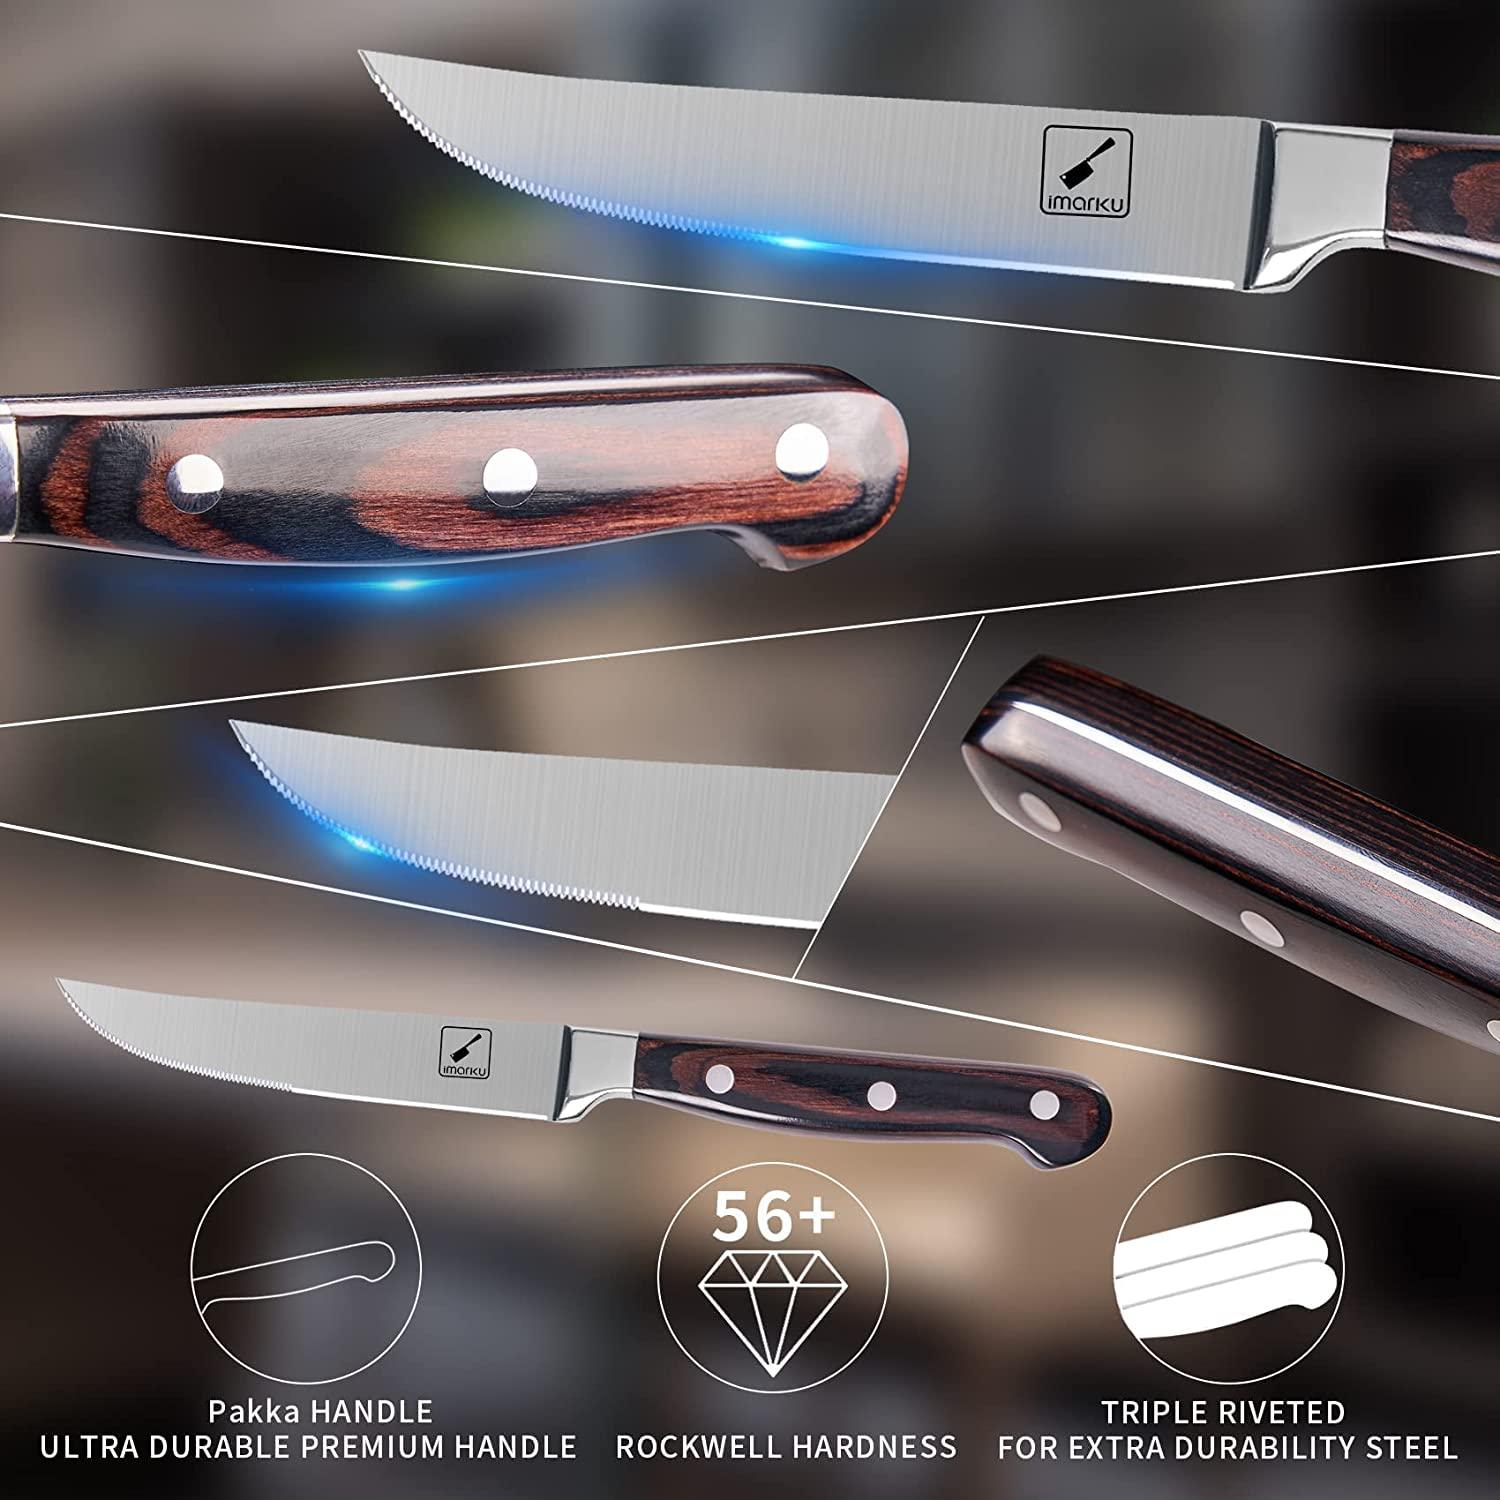 Steak Knives Non Serrated Steak Knife Set of 4 5 Inch German Steel